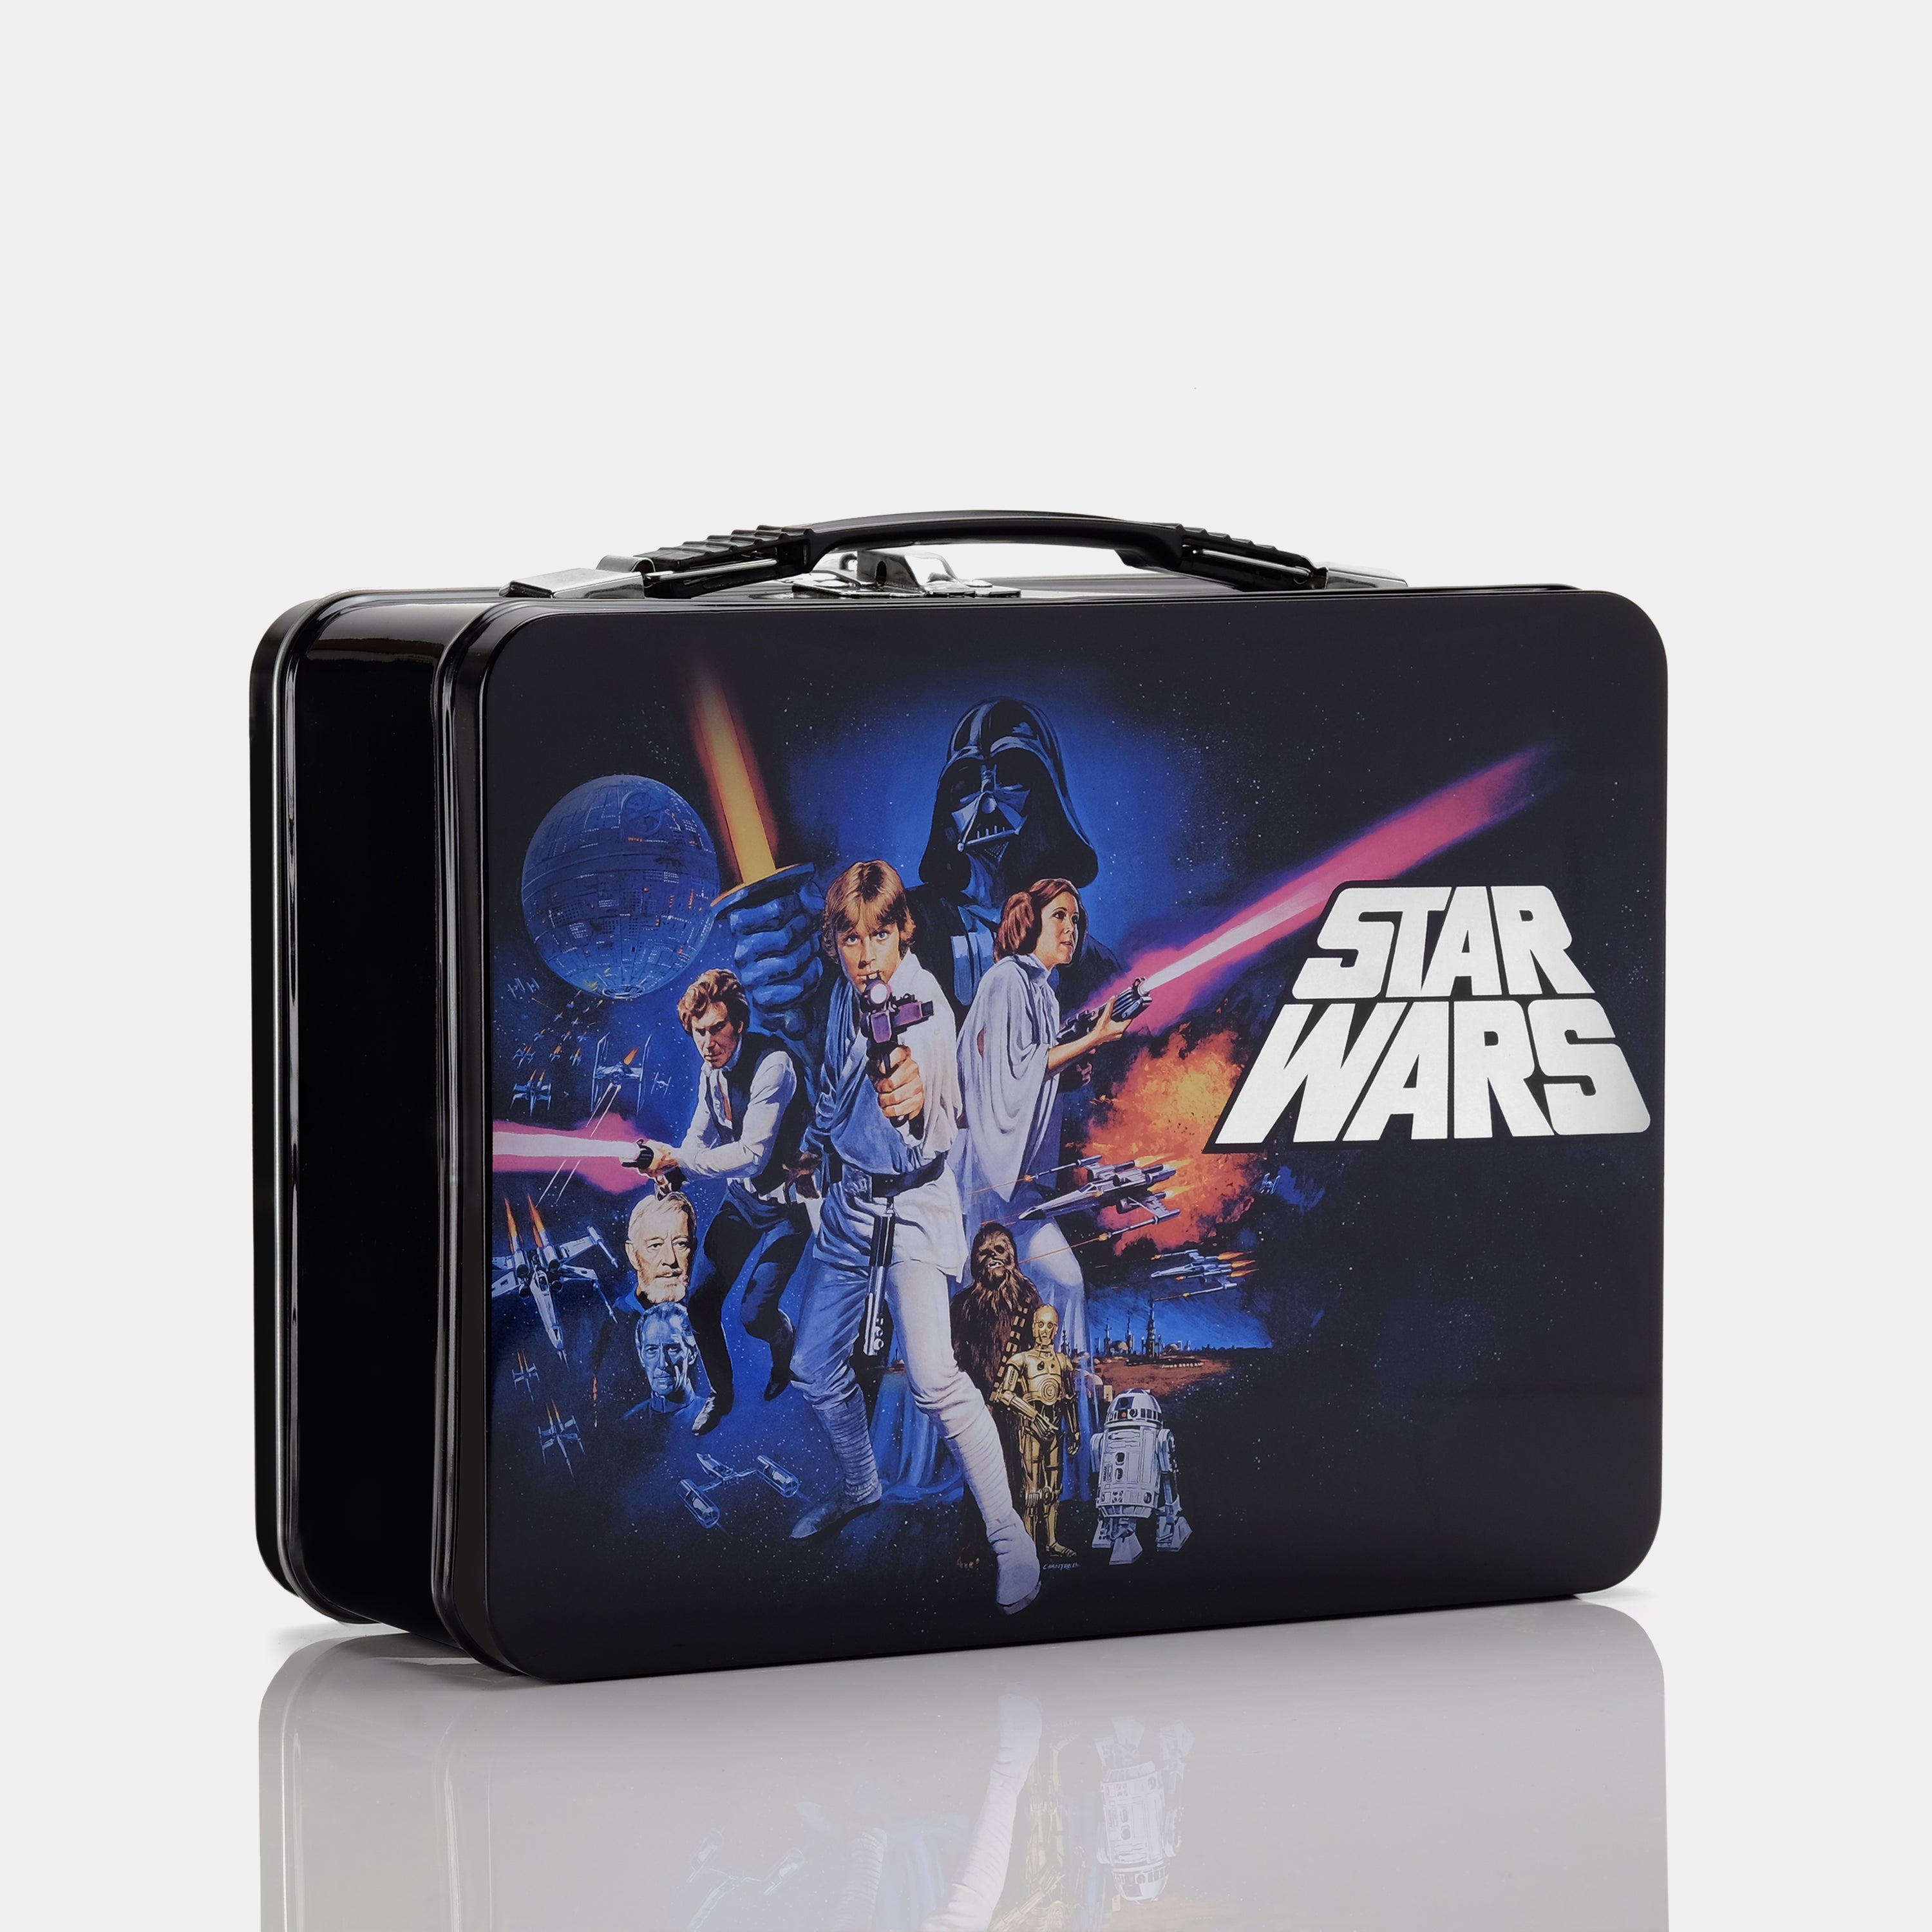 Star Wars: Episode IV Vintage-Inspired Tin Lunchbox